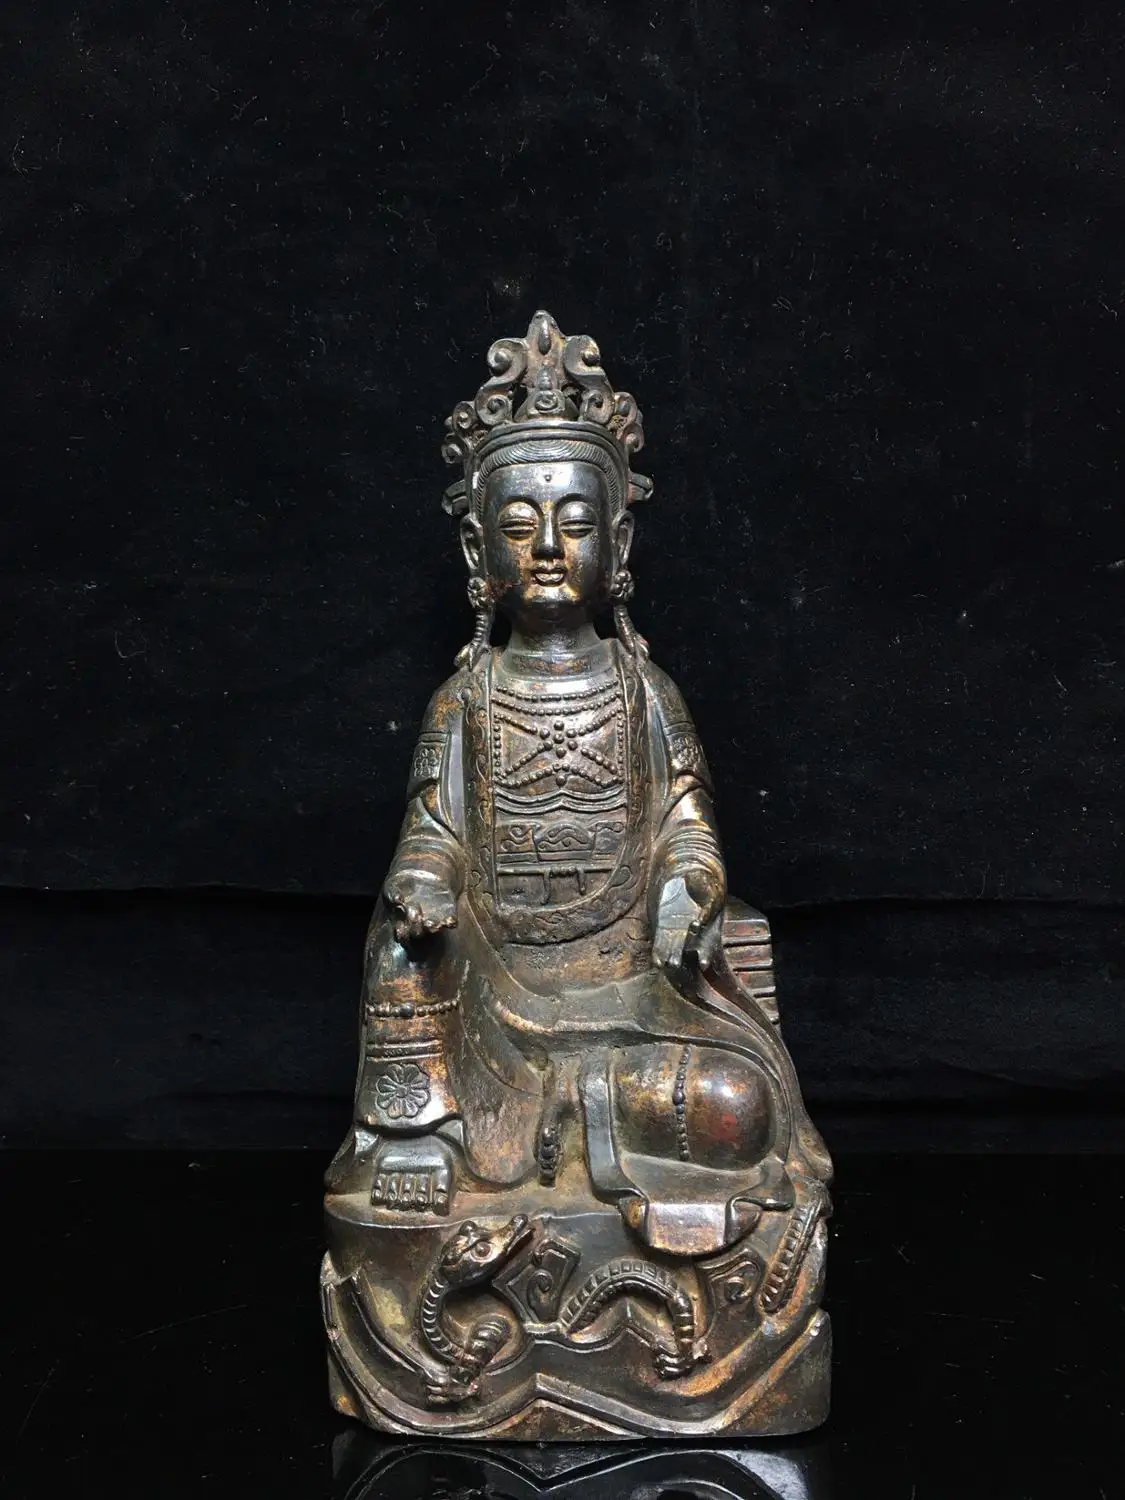 

9"Tibet Buddhism Temple Old Bronze Cinnabars Free Avalokitesvara Buddha Statue Amitabha statue Enshrine the Buddha